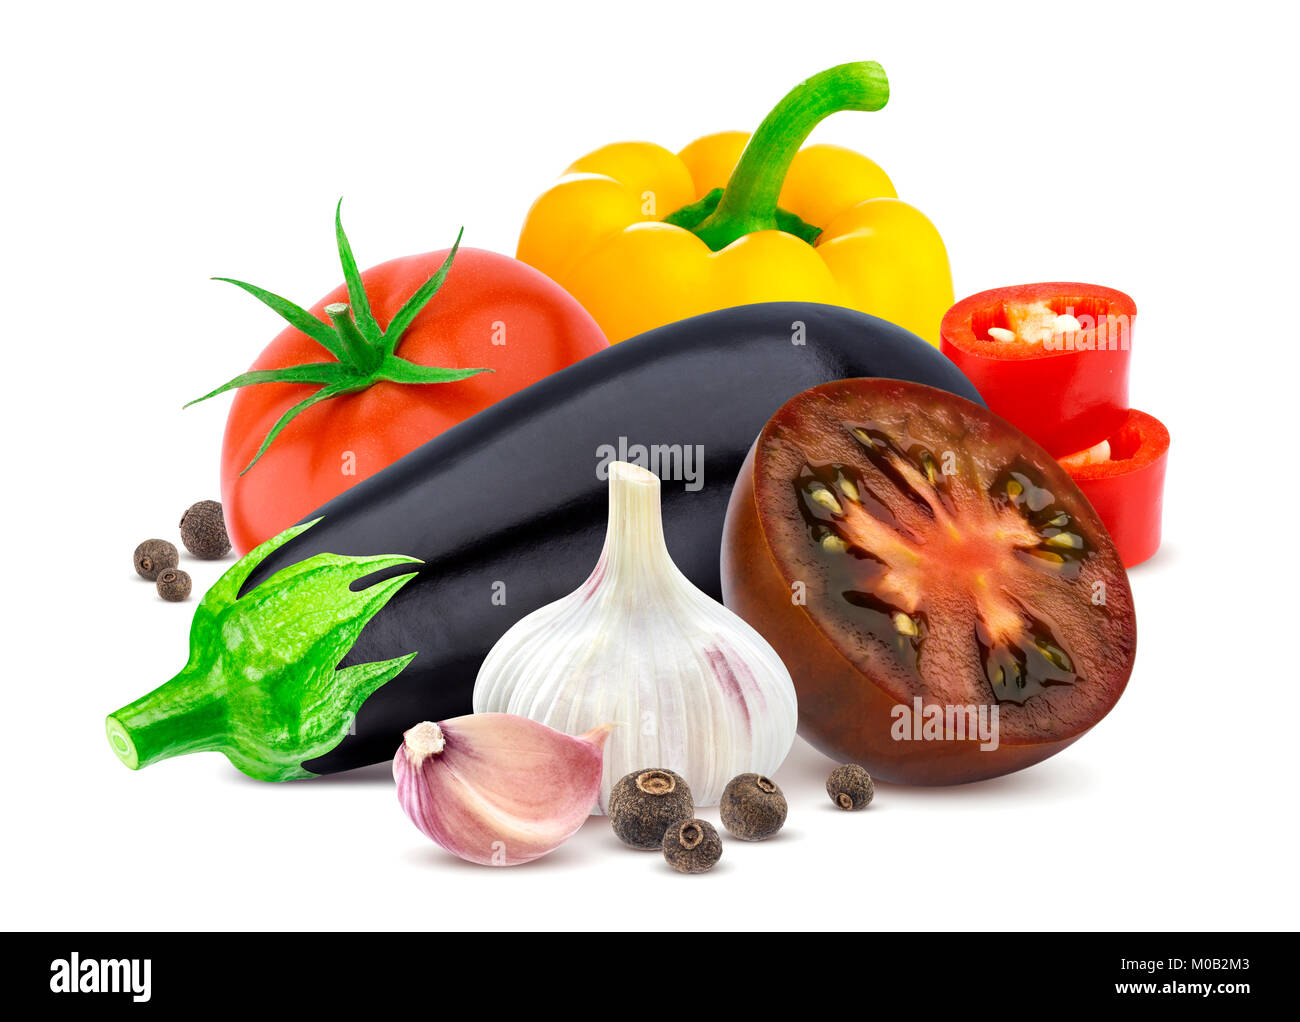 Gruppe von verschiedenen Gemüsen. Auberginen, Tomaten, Paprika und Knoblauch auf weißem Hintergrund. Stockfoto